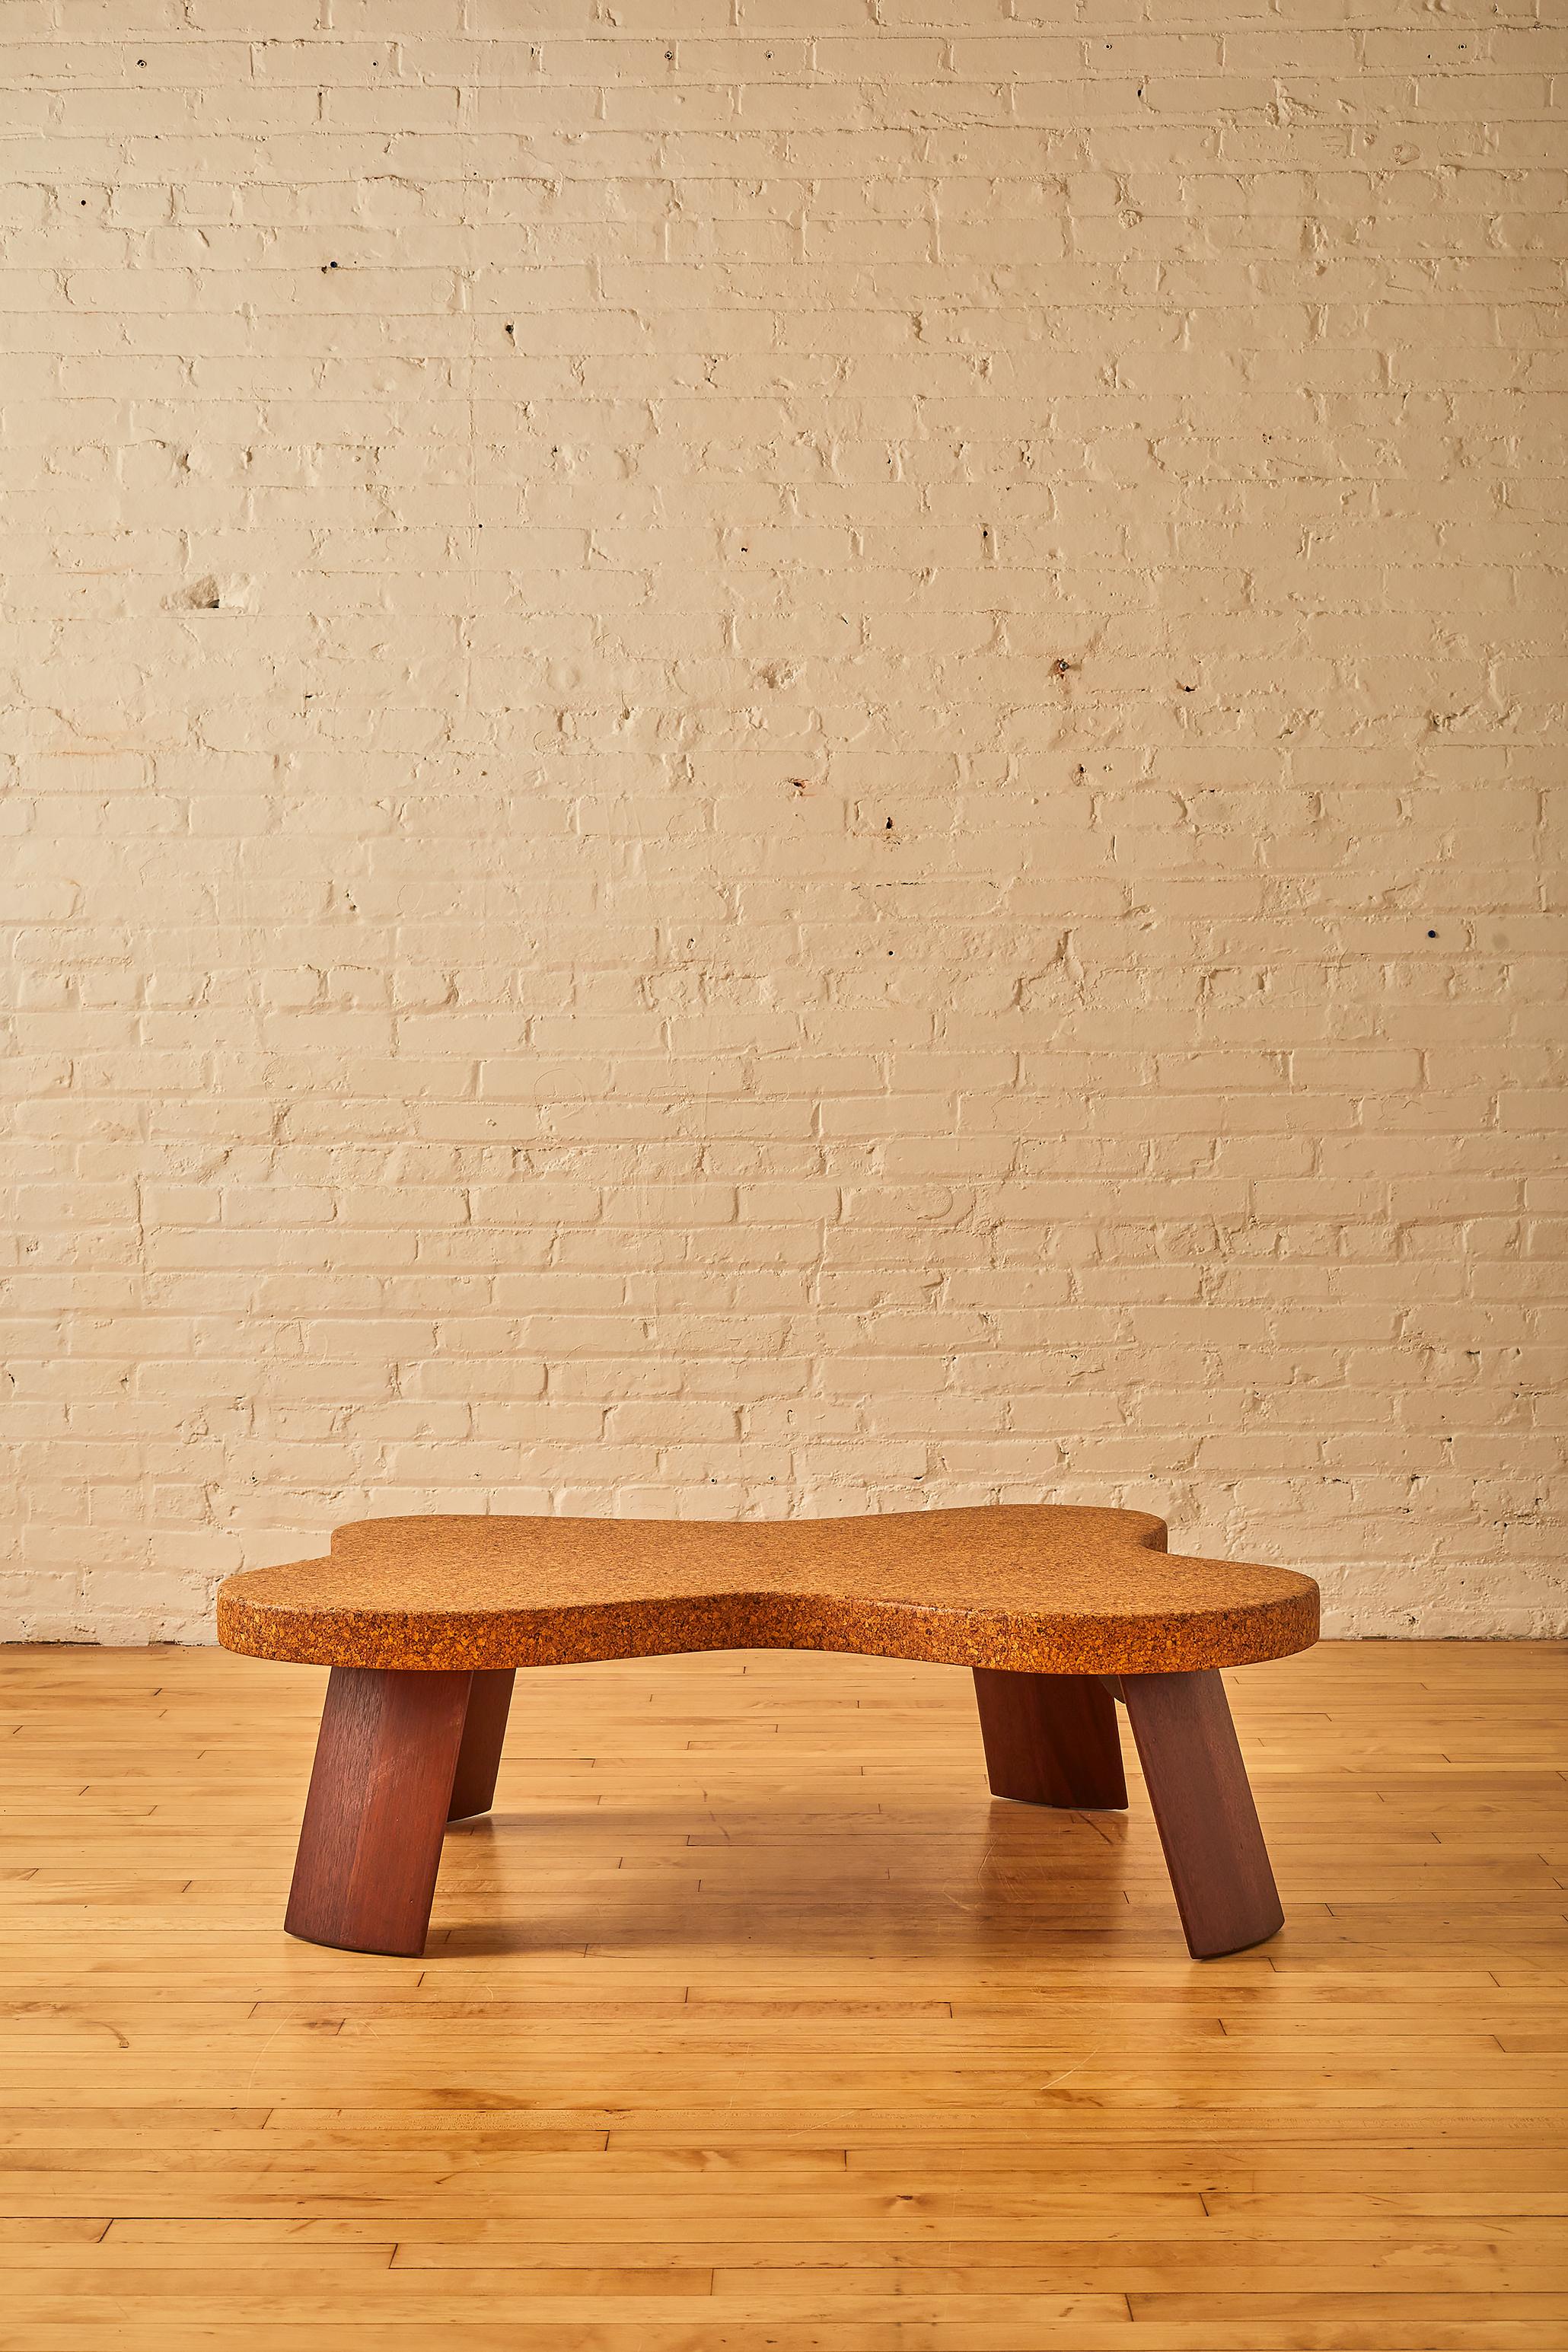 Amoeba Couchtisch von Paul T. Frankl (Modell 5005) von Johnson furniture company mit einer Tischplatte aus Naturwachskork und Beinen aus Mahagoni.